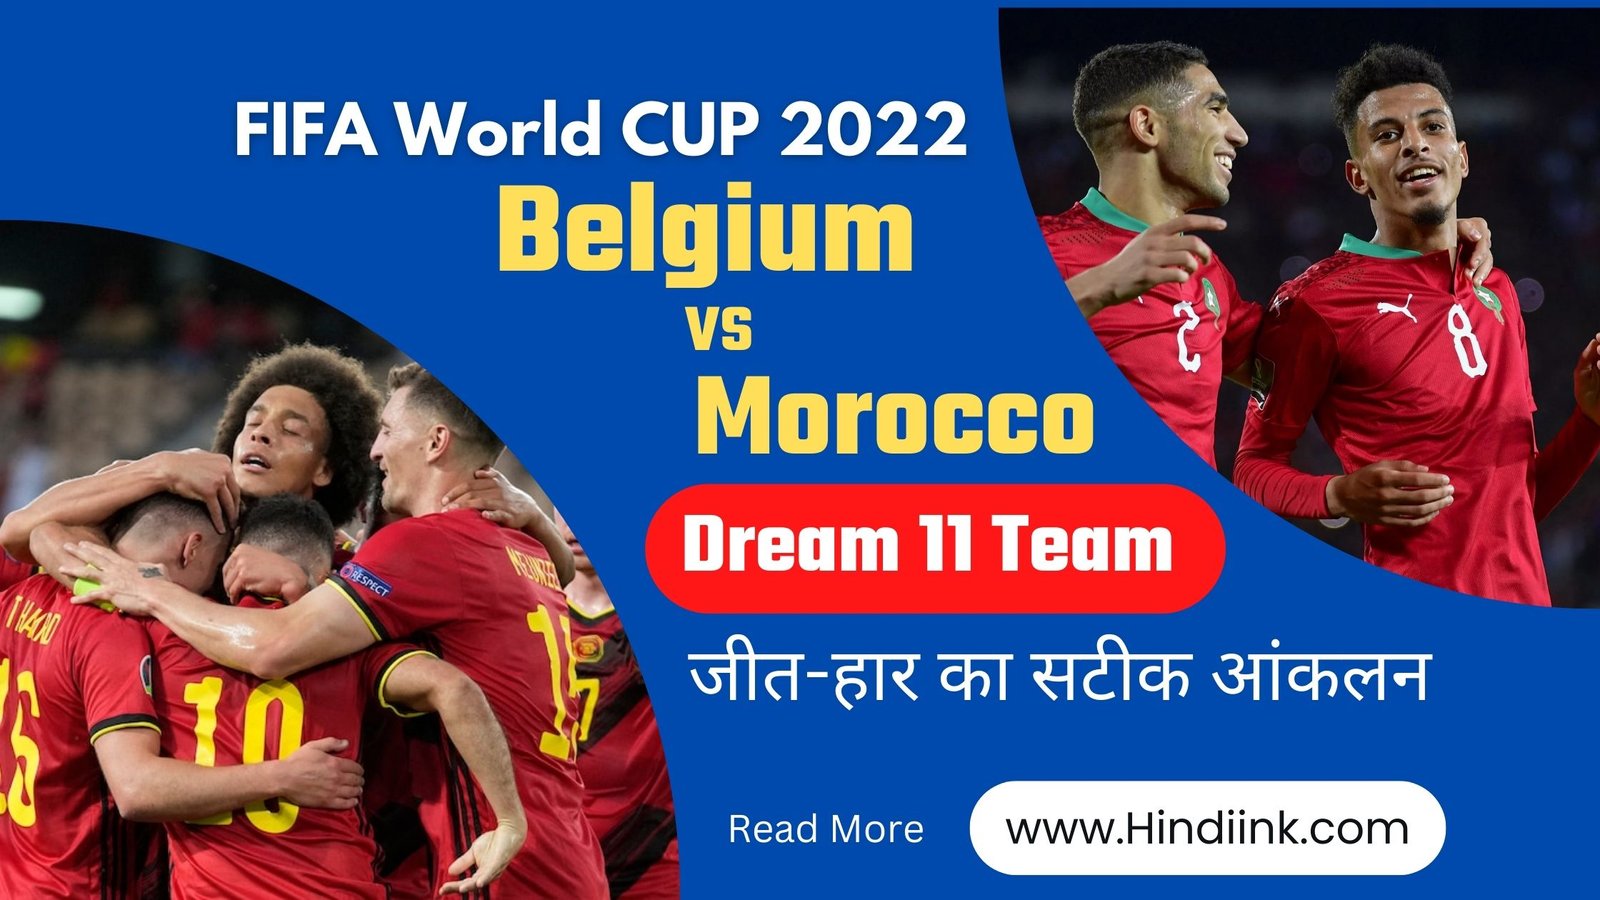 Belgium vs Morocco Match Prediction in Hindi